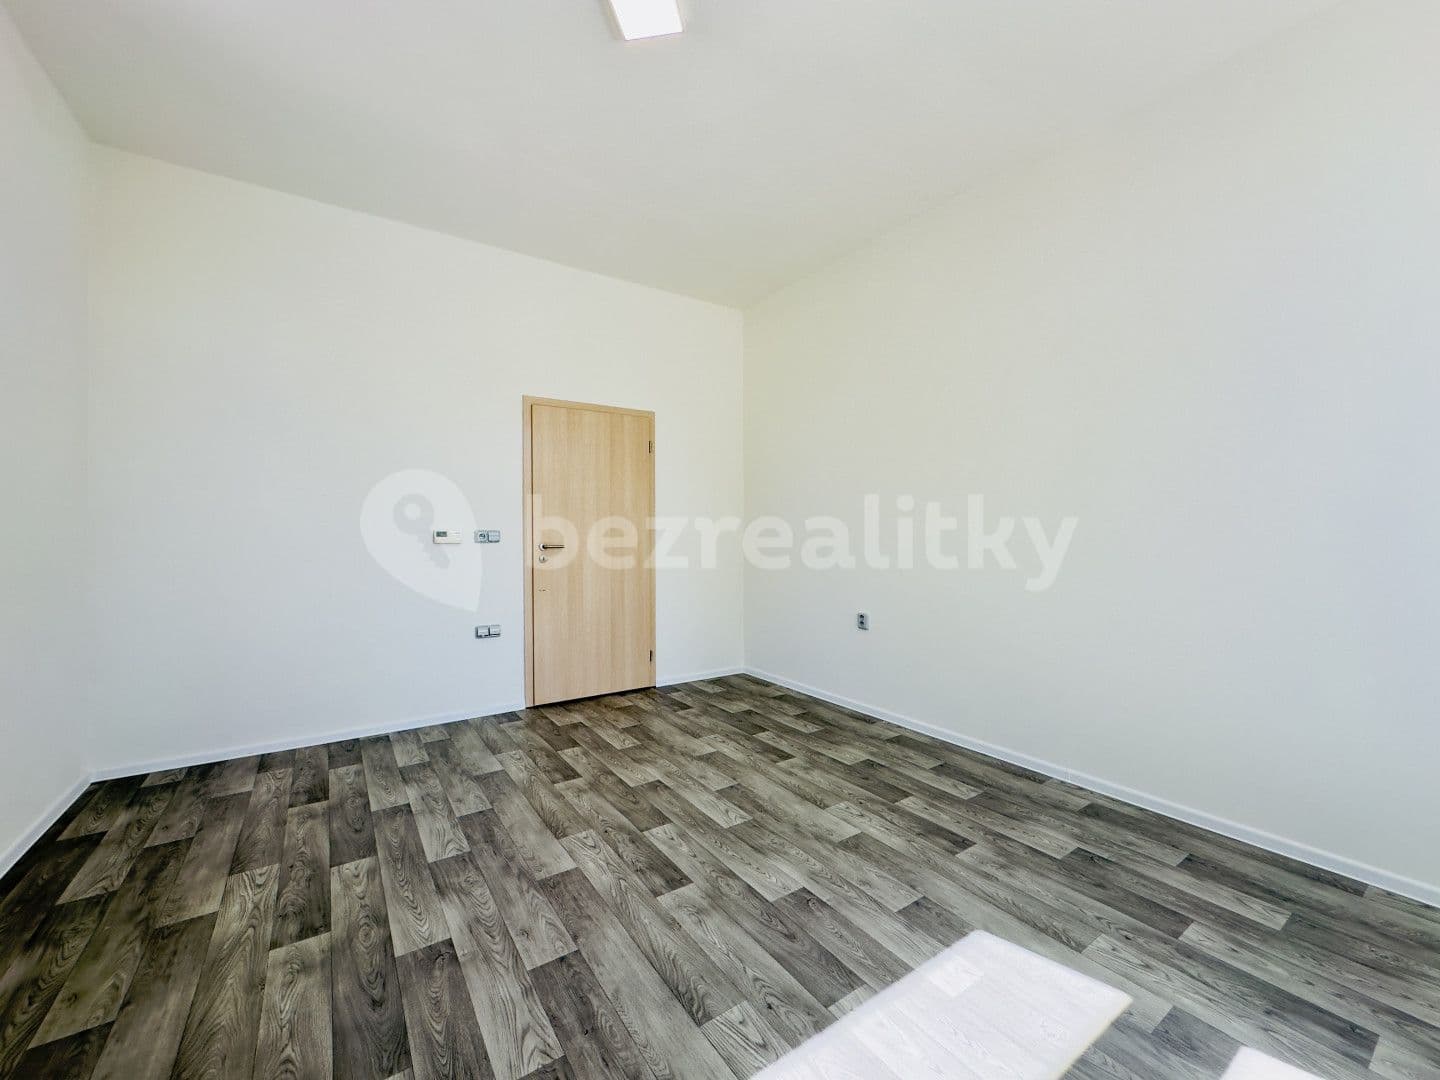 2 bedroom flat for sale, 59 m², Vídeňská, Nová Bystřice, Jihočeský Region